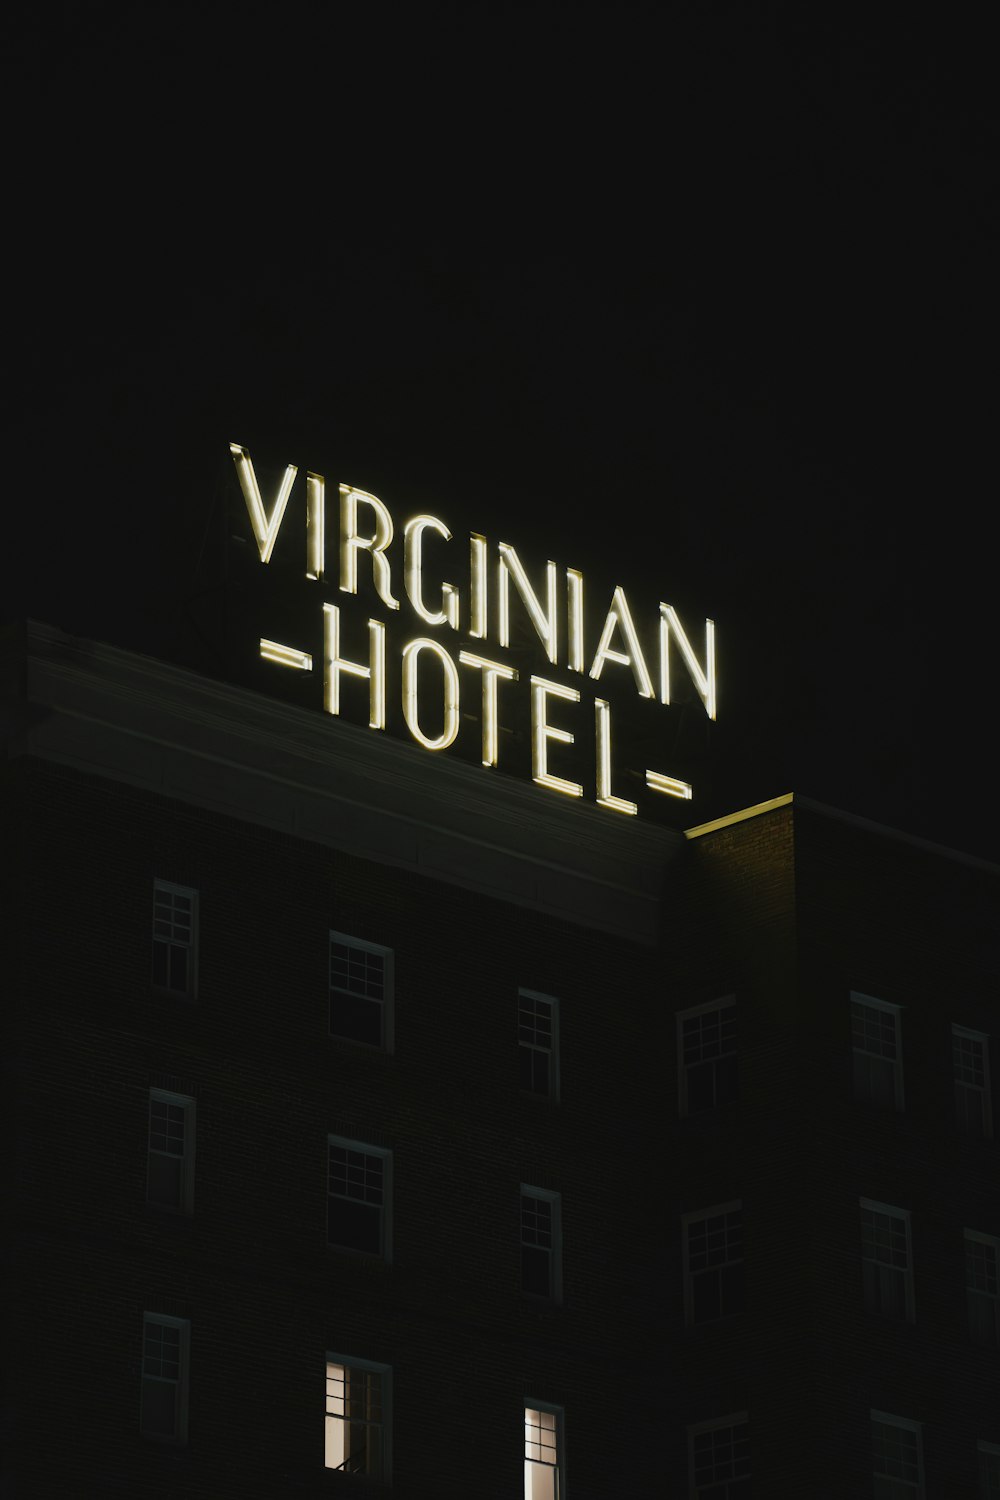 「バージニアンホテル」と書かれた看板が夜に点灯